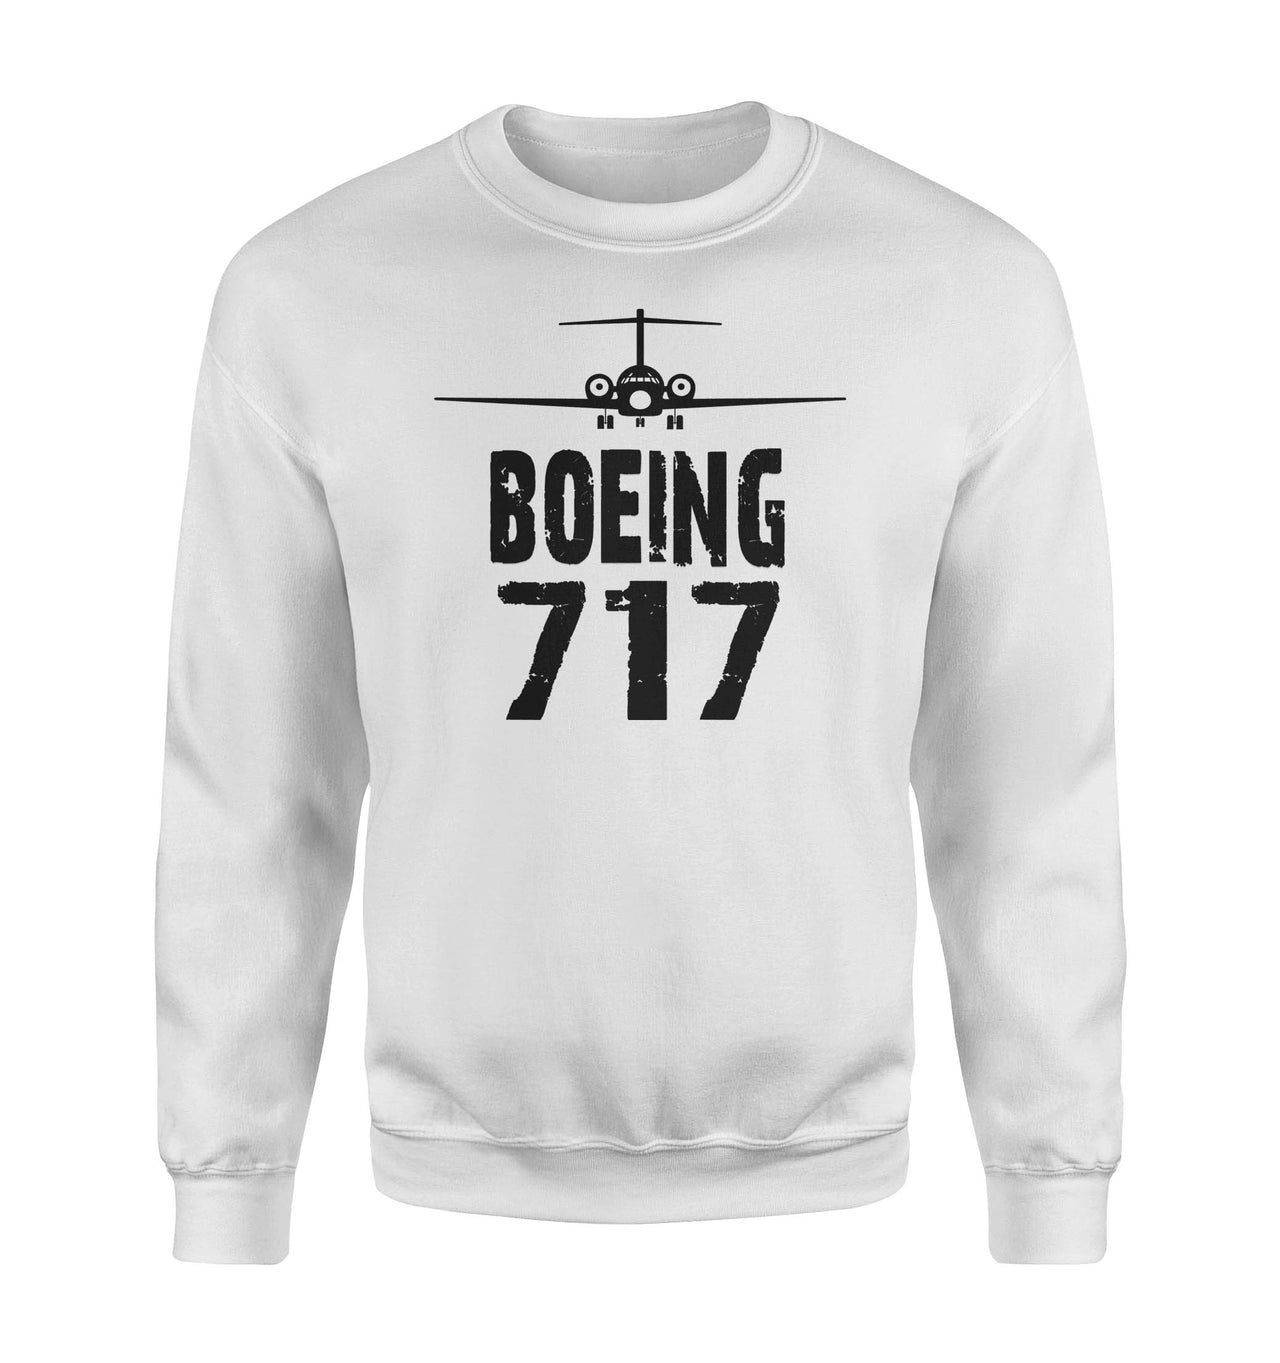 Boeing 717 & Plane Designed Sweatshirts